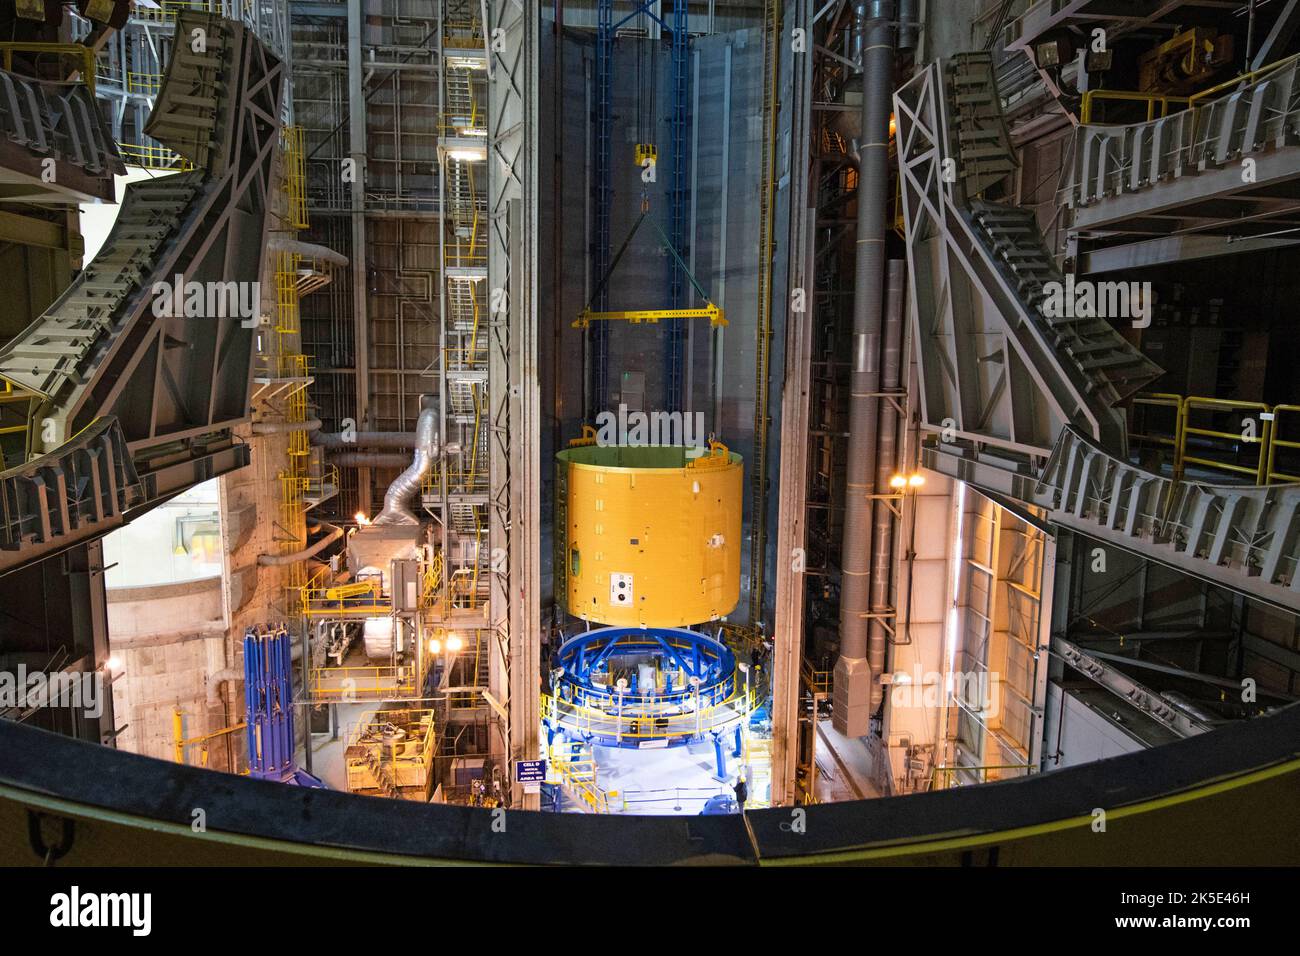 Techniker hoben den Zwischentank für die NASA-Tiefraumrakete, das Space Launch System (SLS), in einen vertikalen Stapelbereich in der Michoud Assembly Facility der NASA in New Orleans. Hier werden die Ingenieure mit zwei anderen großen Strukturen die obere Hälfte der 212 Meter hohen Kernphase bilden, die auf der Exploration Mission-1, dem ersten Flug von SLS und der Orion-Sonde, geflogen wird. Der Zwischentank, der einige der Avionik enthält, die die Rakete steuern, wird mit dem Treibstofftank verschraubt. Eine optimierte Version eines Originalbildes der NASA. Quelle: NASA/JGuidry Stockfoto